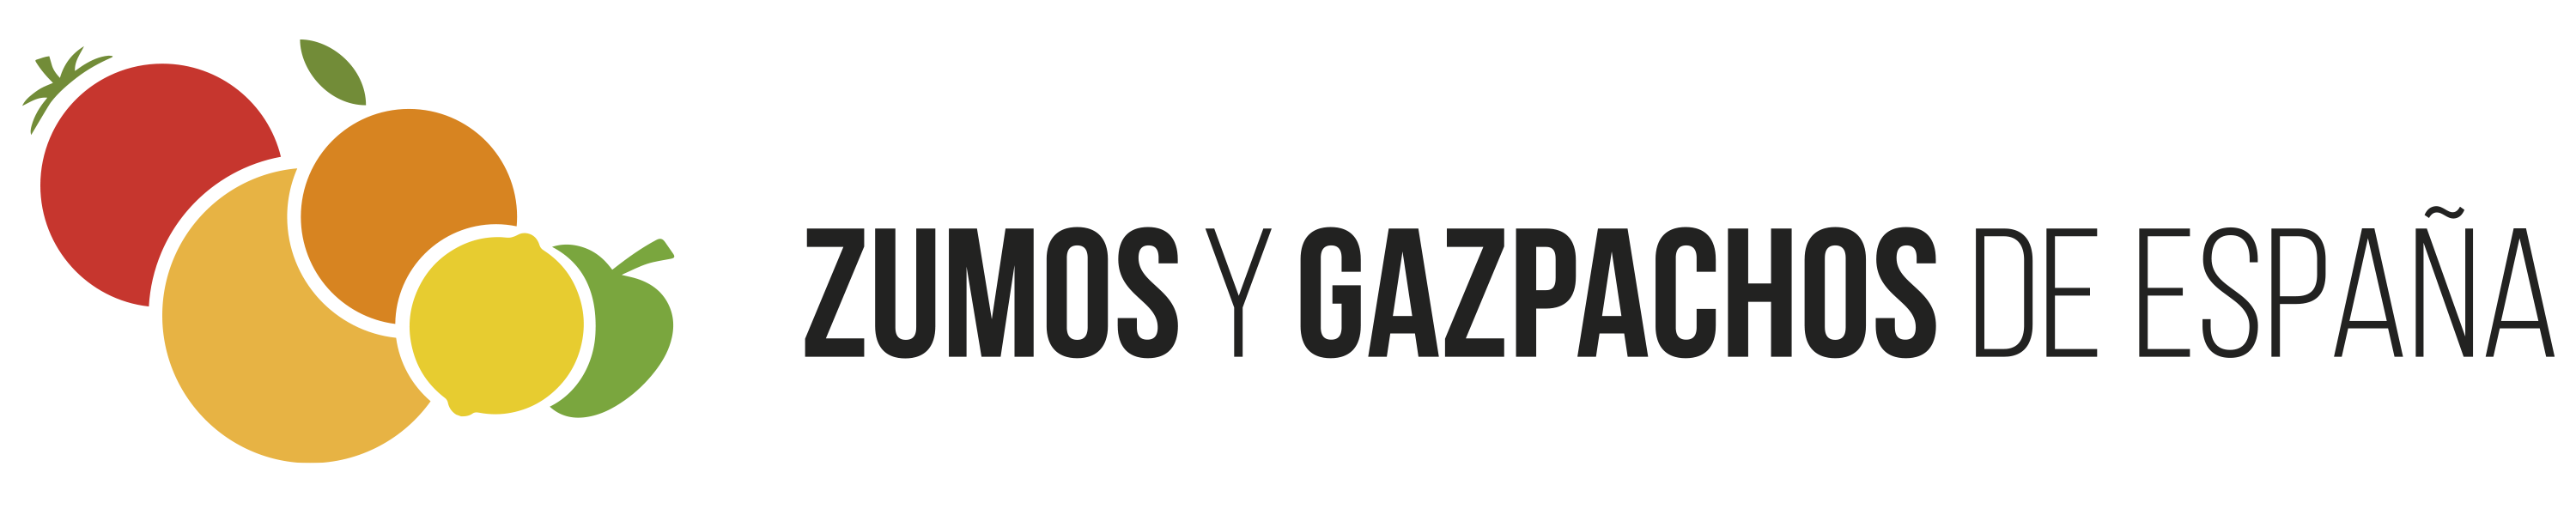 Zumos y Gazpachos de Espaa